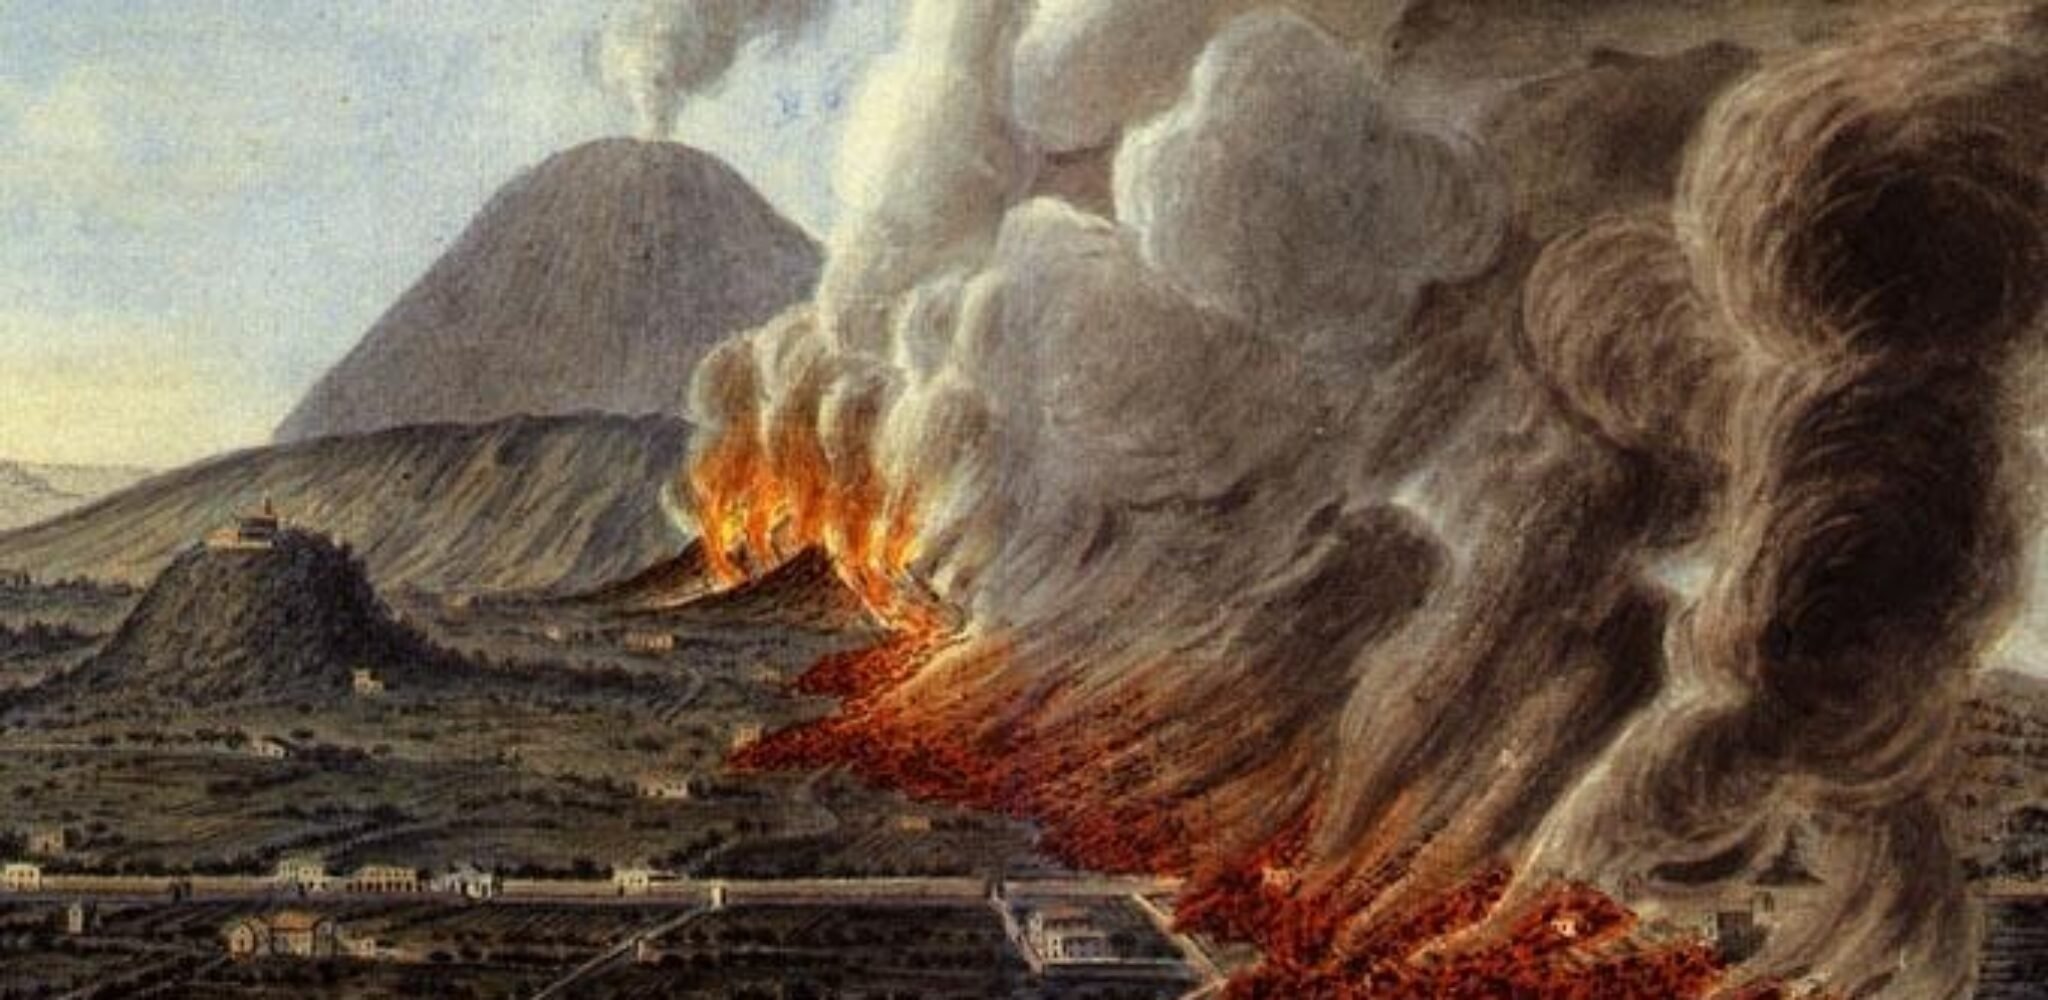 Извержение вулкана уничтожило город. Извержение вулкана Везувия в 79 году. Извержение Везувия Помпеи. Извержение Везувия в 79 Помпеи. Вулкан Везувий извержение Помпеи.